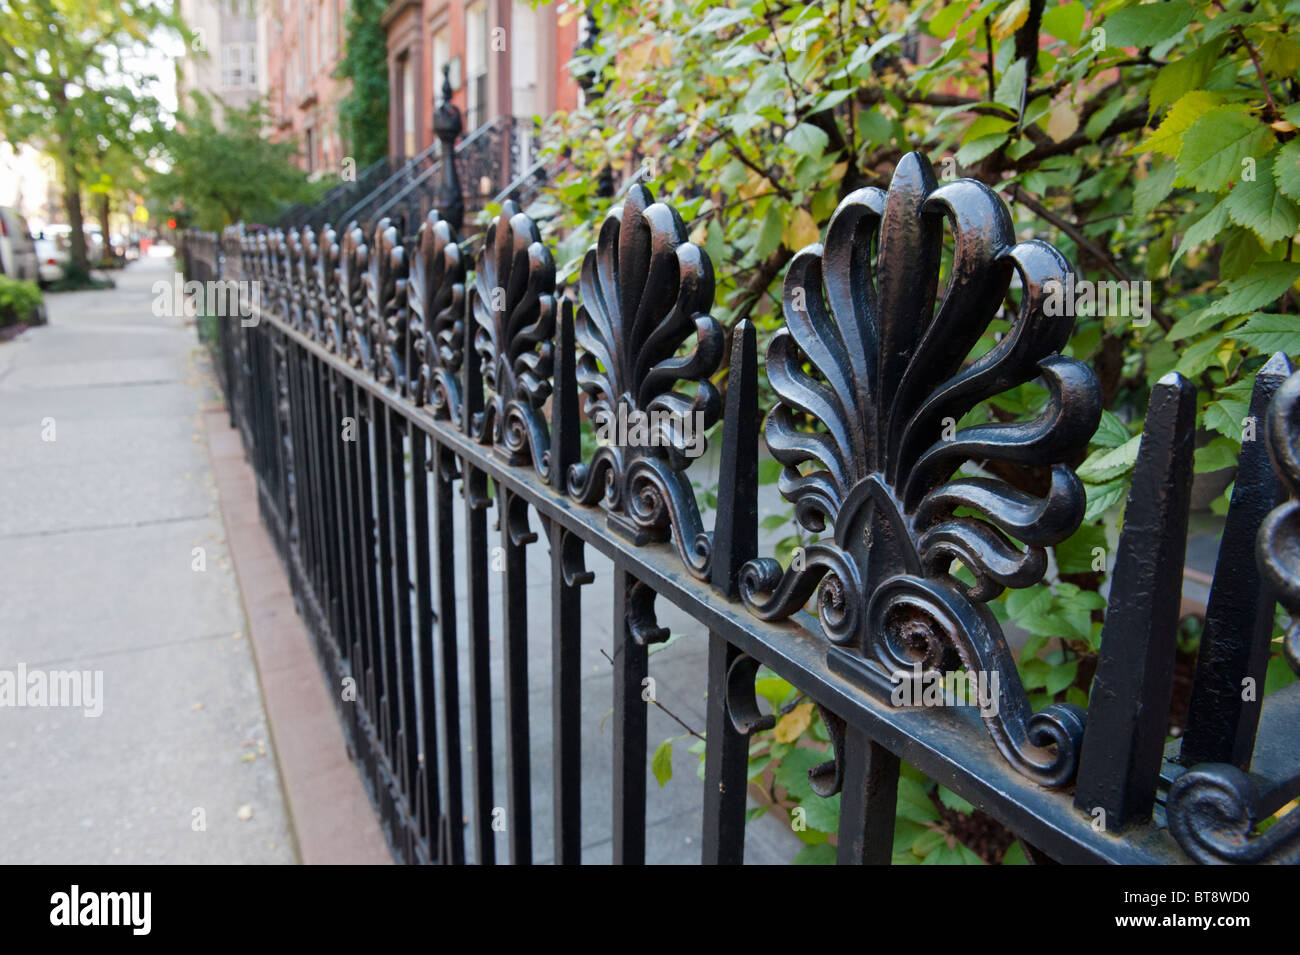 Detalle de barandillas de hierro ornamentadas en la calle en el distrito de Chelsea de Manhattan, Ciudad de Nueva York Foto de stock